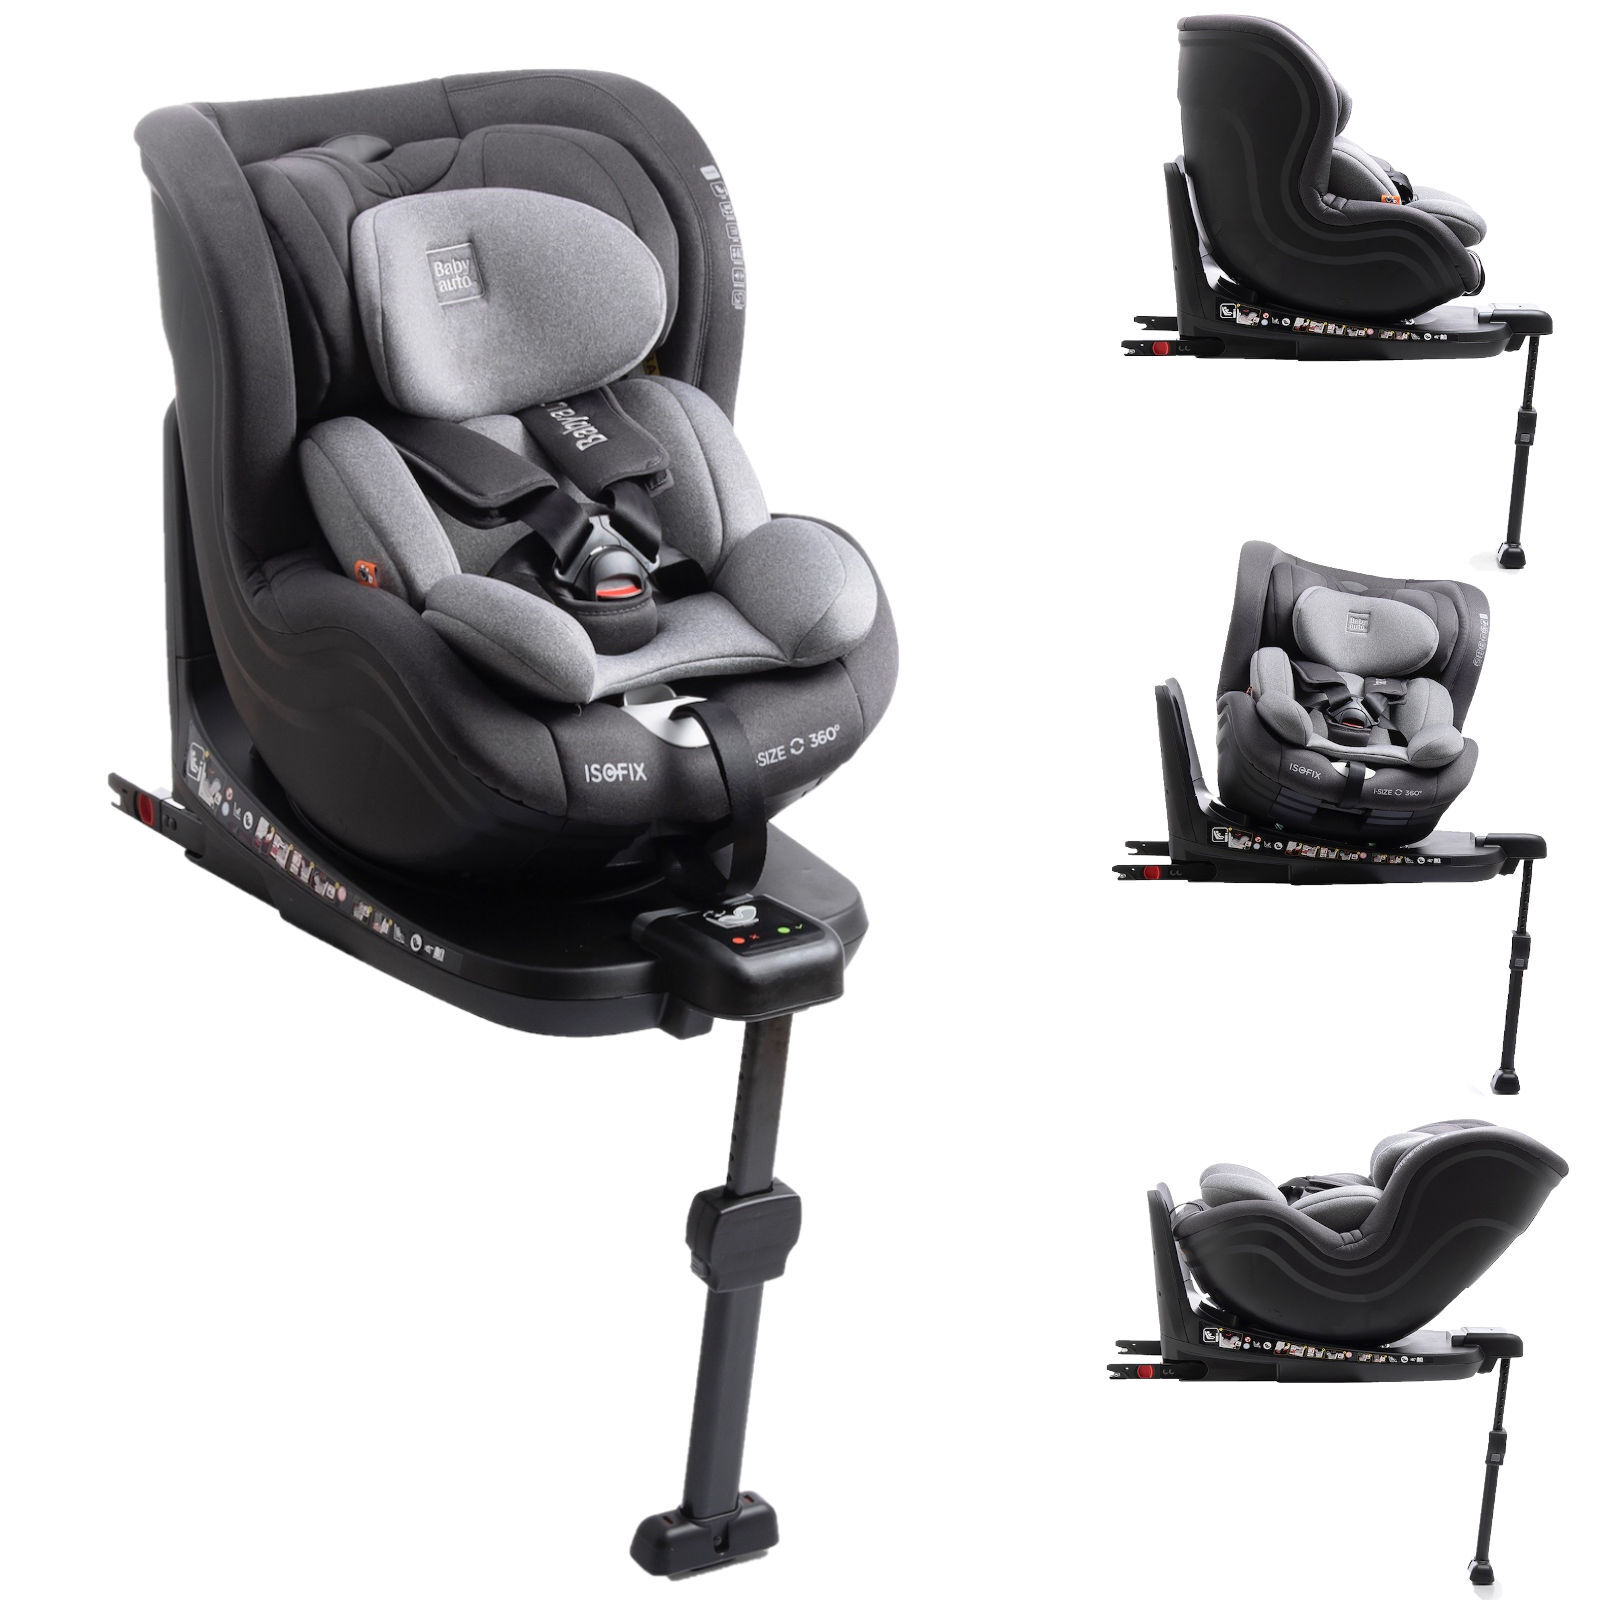 Babyauto Signa i-Size Spin 360 Group 0+/1 ISOFIX Car Seat - Grey Melange